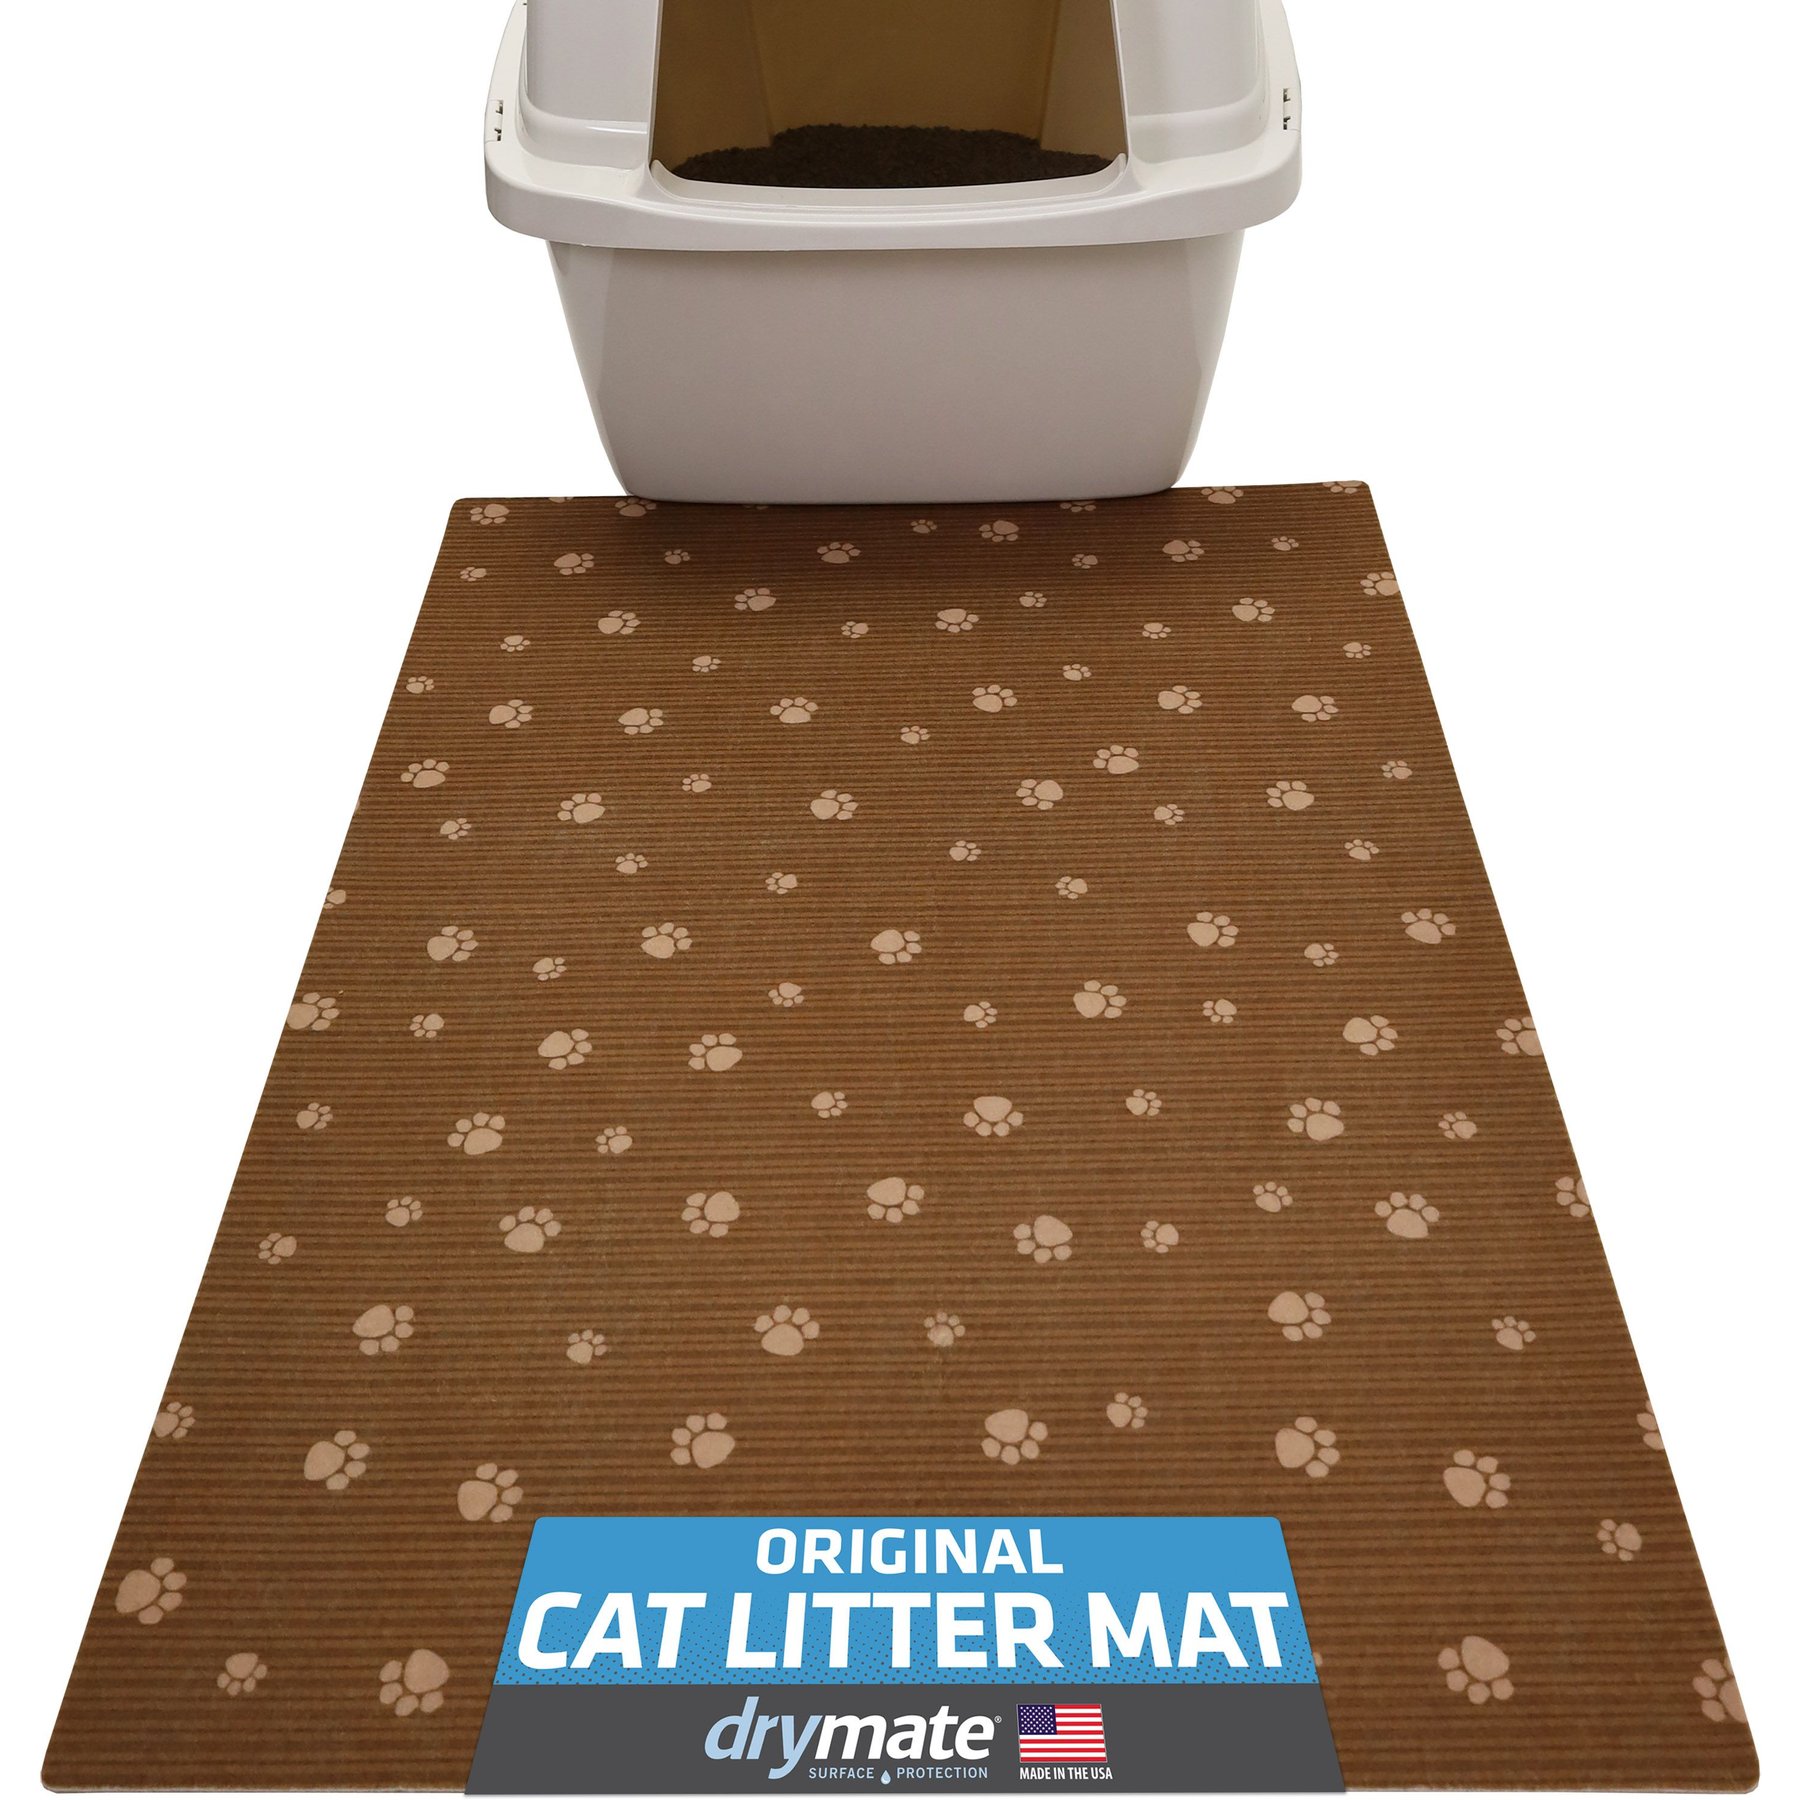 Casa Leo Leo's Loo Cat Litter Mat, Grey